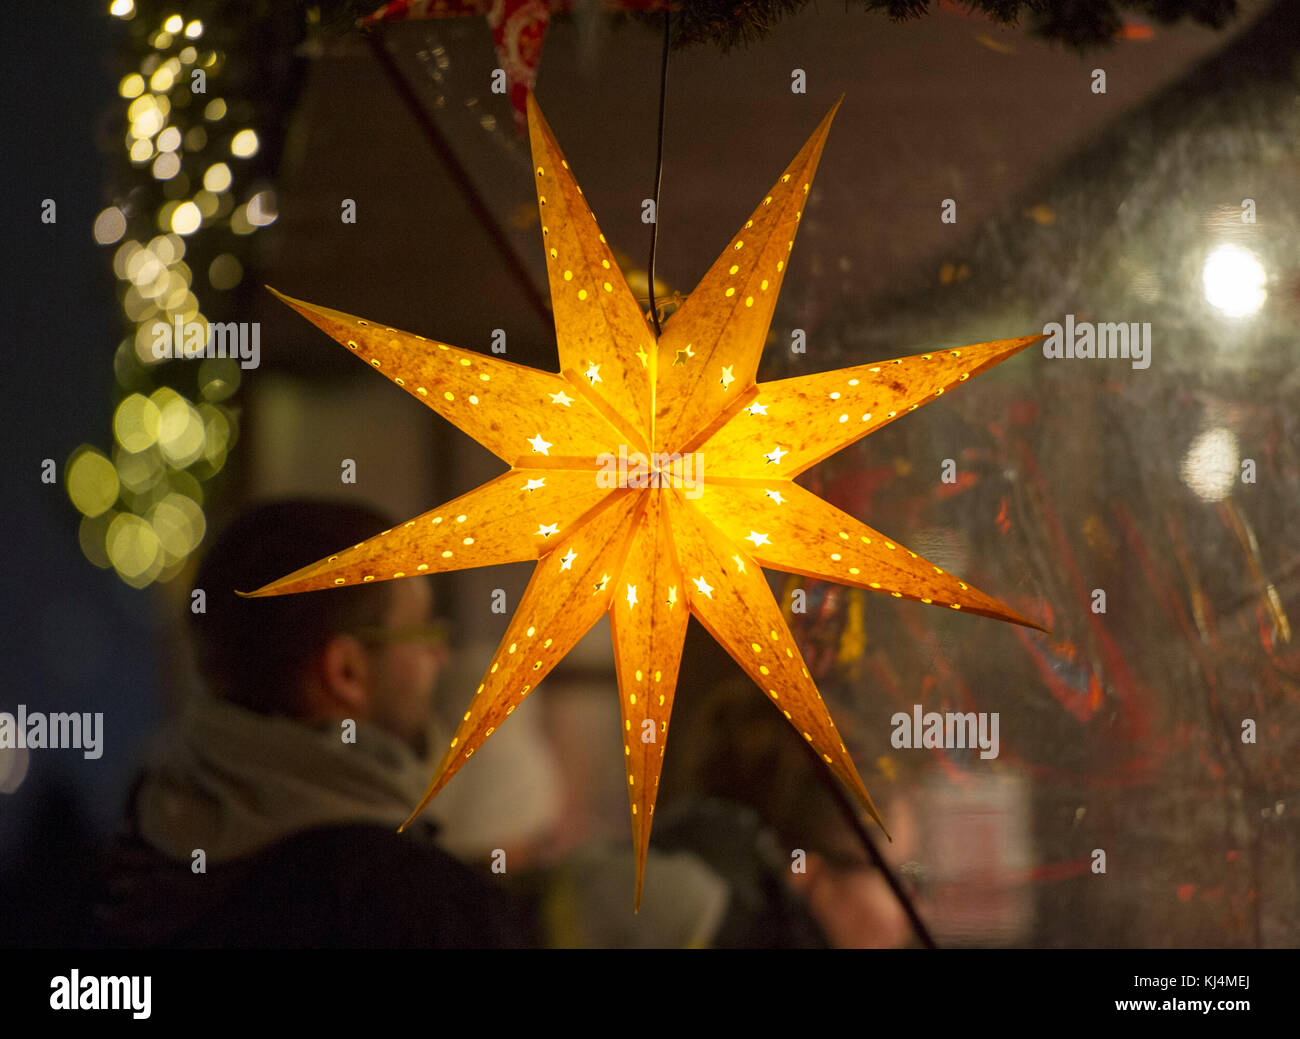 Stella Di Natale Illuminata.Una Stella Illuminata Lanterna Sul Display A Edimburgo Il Mercato Di Natale Foto Stock Alamy